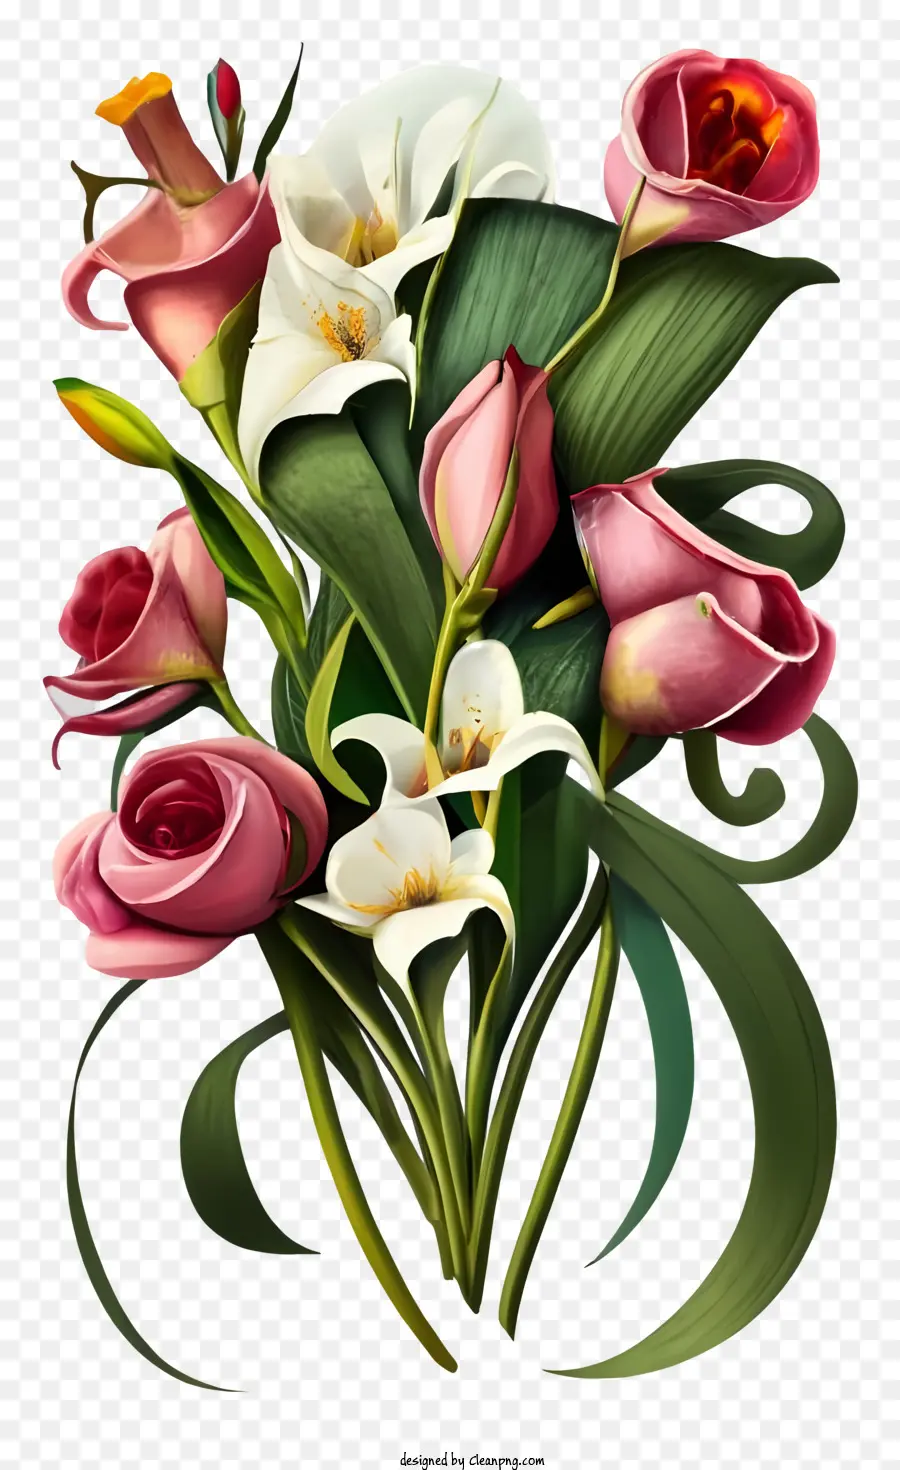 bouquet di rose e gigli fiori rosa e bianchi disposti in un vaso dipinto in stile realistico vivido e realistico - Pittura realistica di bouquet con fiori rosa